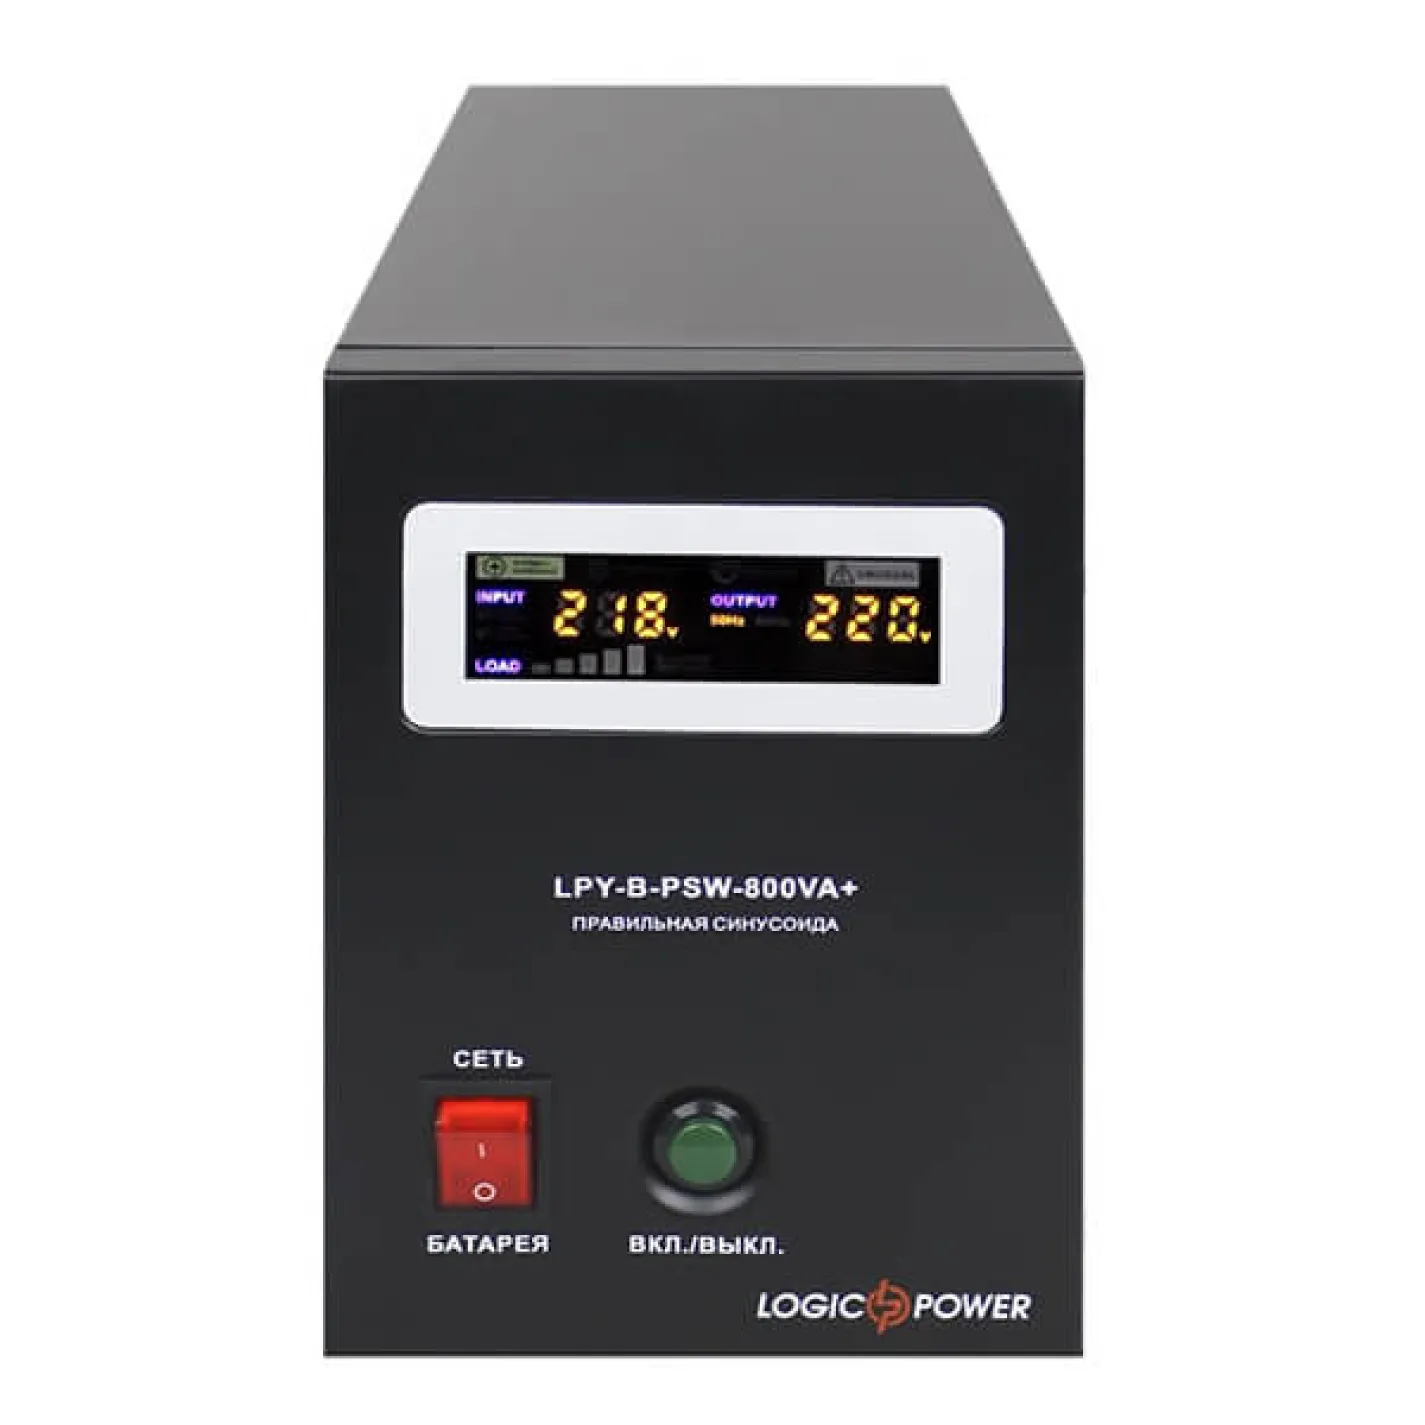 Джерело безперебійного живлення LogicPower 12V LPY-B-PSW-800VA+(560Вт) 5A/15A з правильною синусоїдою - Фото 2